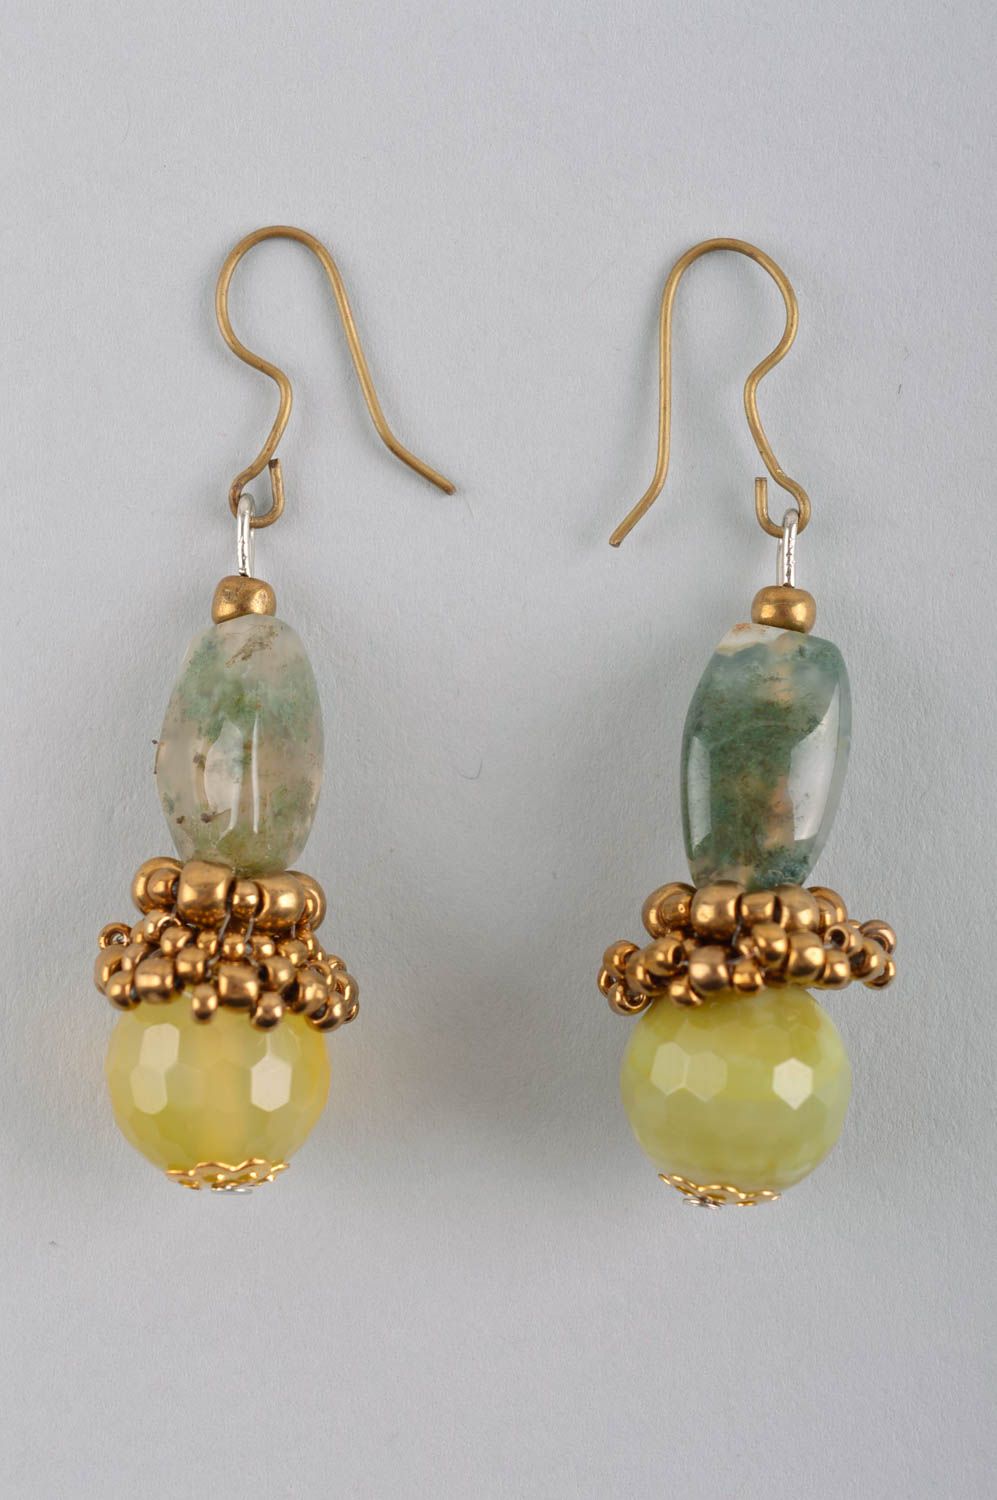 Handmade earrings stylish earrings designer jewelry women accessories gift ideas photo 3